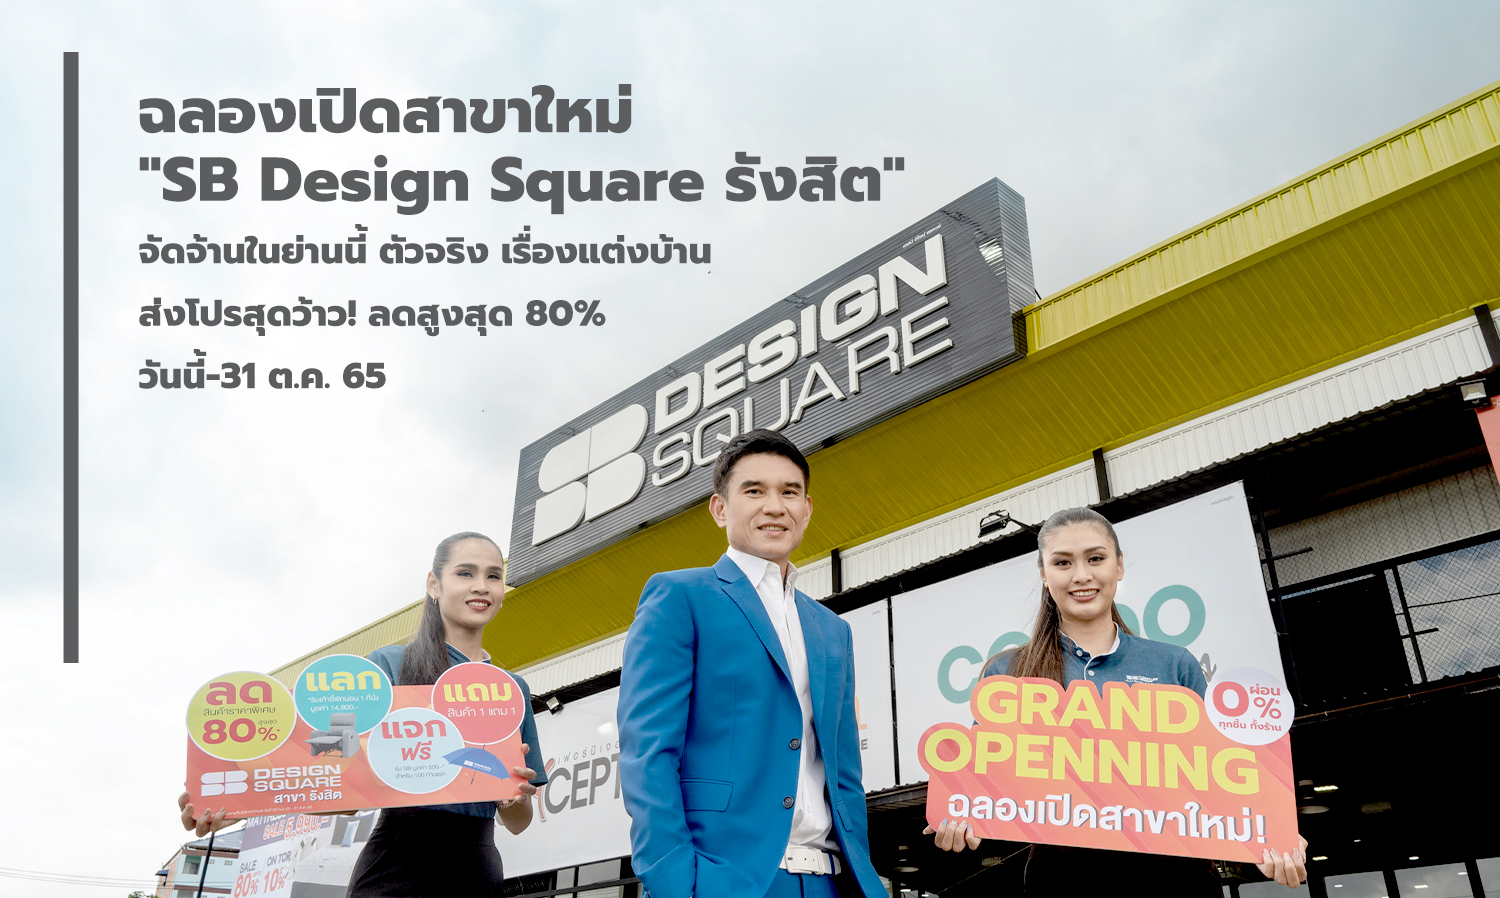 ฉลองเปิดสาขาใหม่ SB Design Square รังสิต จัดจ้านในย่านนี้ ตัวจริง เรื่องแต่งบ้าน ส่งโปรสุดว้าวลดสูงสุด 80% วันนี้ - 31 ต.ค. 65